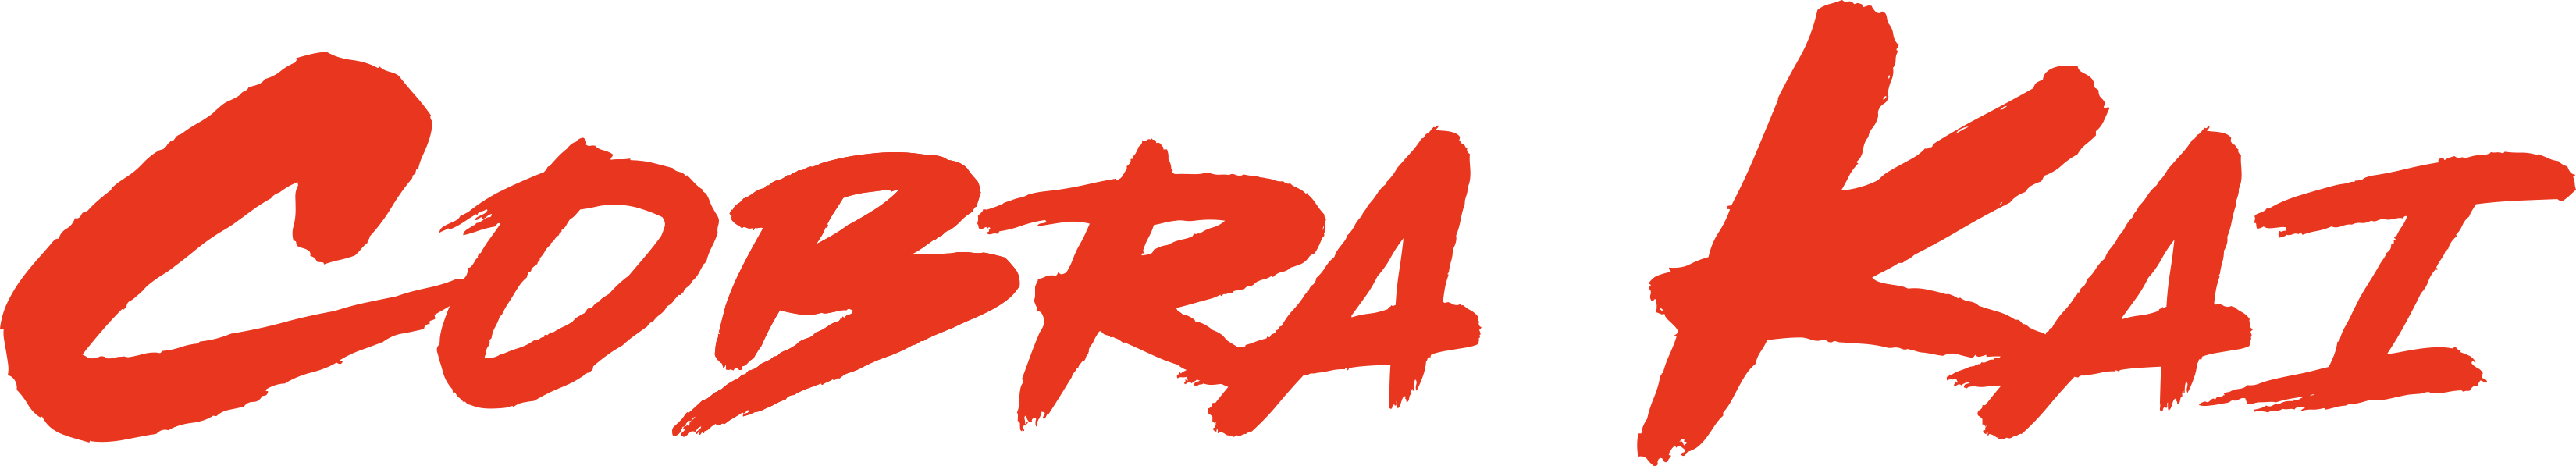 Cobra Kai Logo PNG Free Download